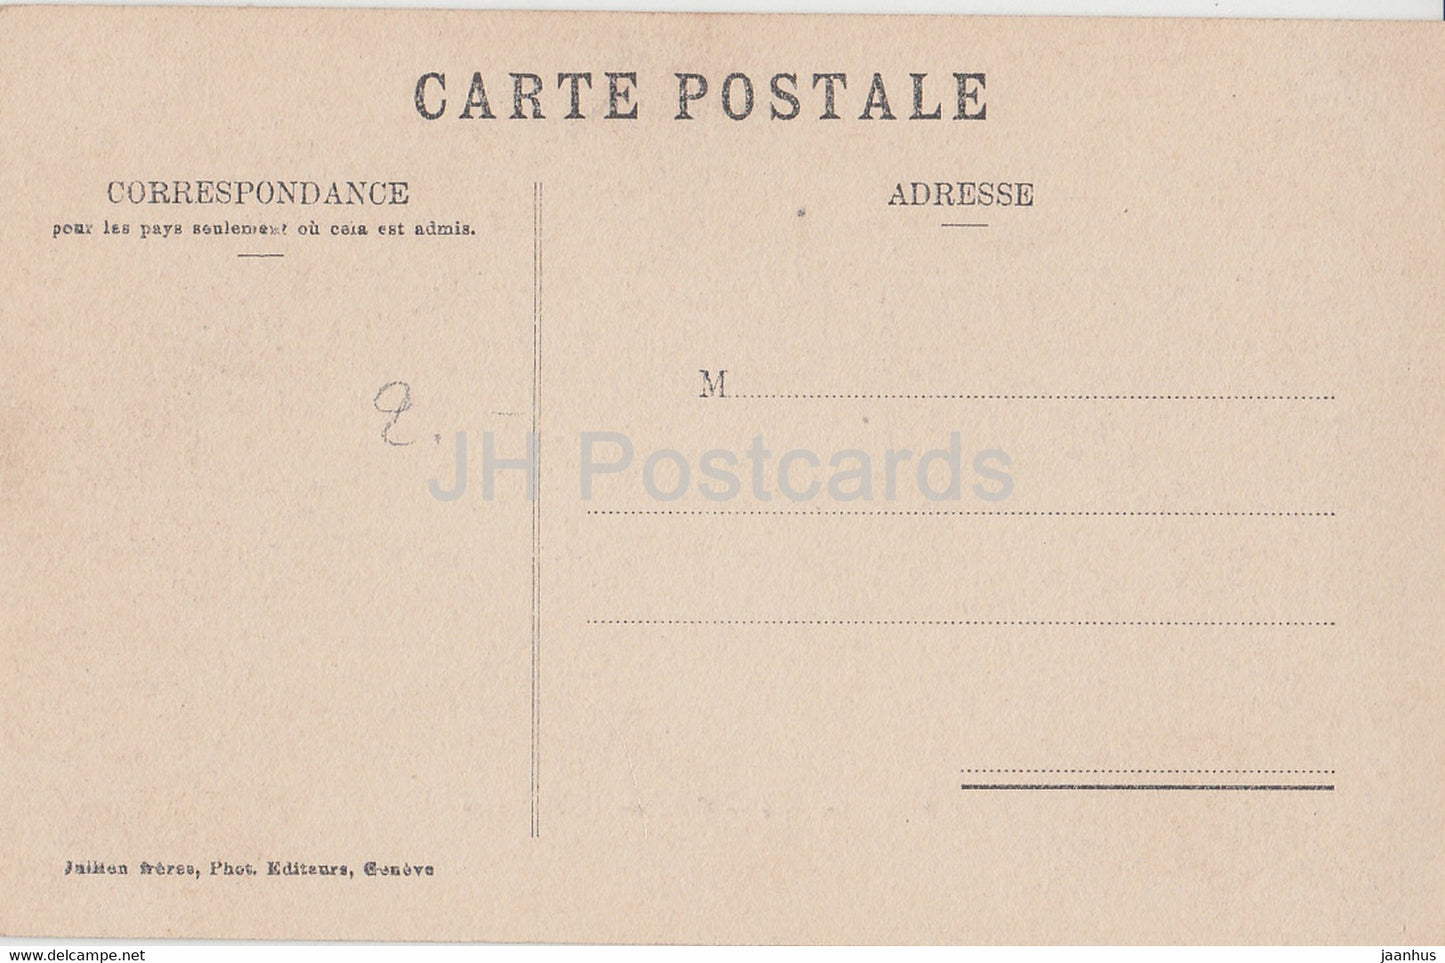 Geneve - Genève - Quai du Mont Blanc - 241 - carte postale ancienne - 1911 - Suisse - occasion